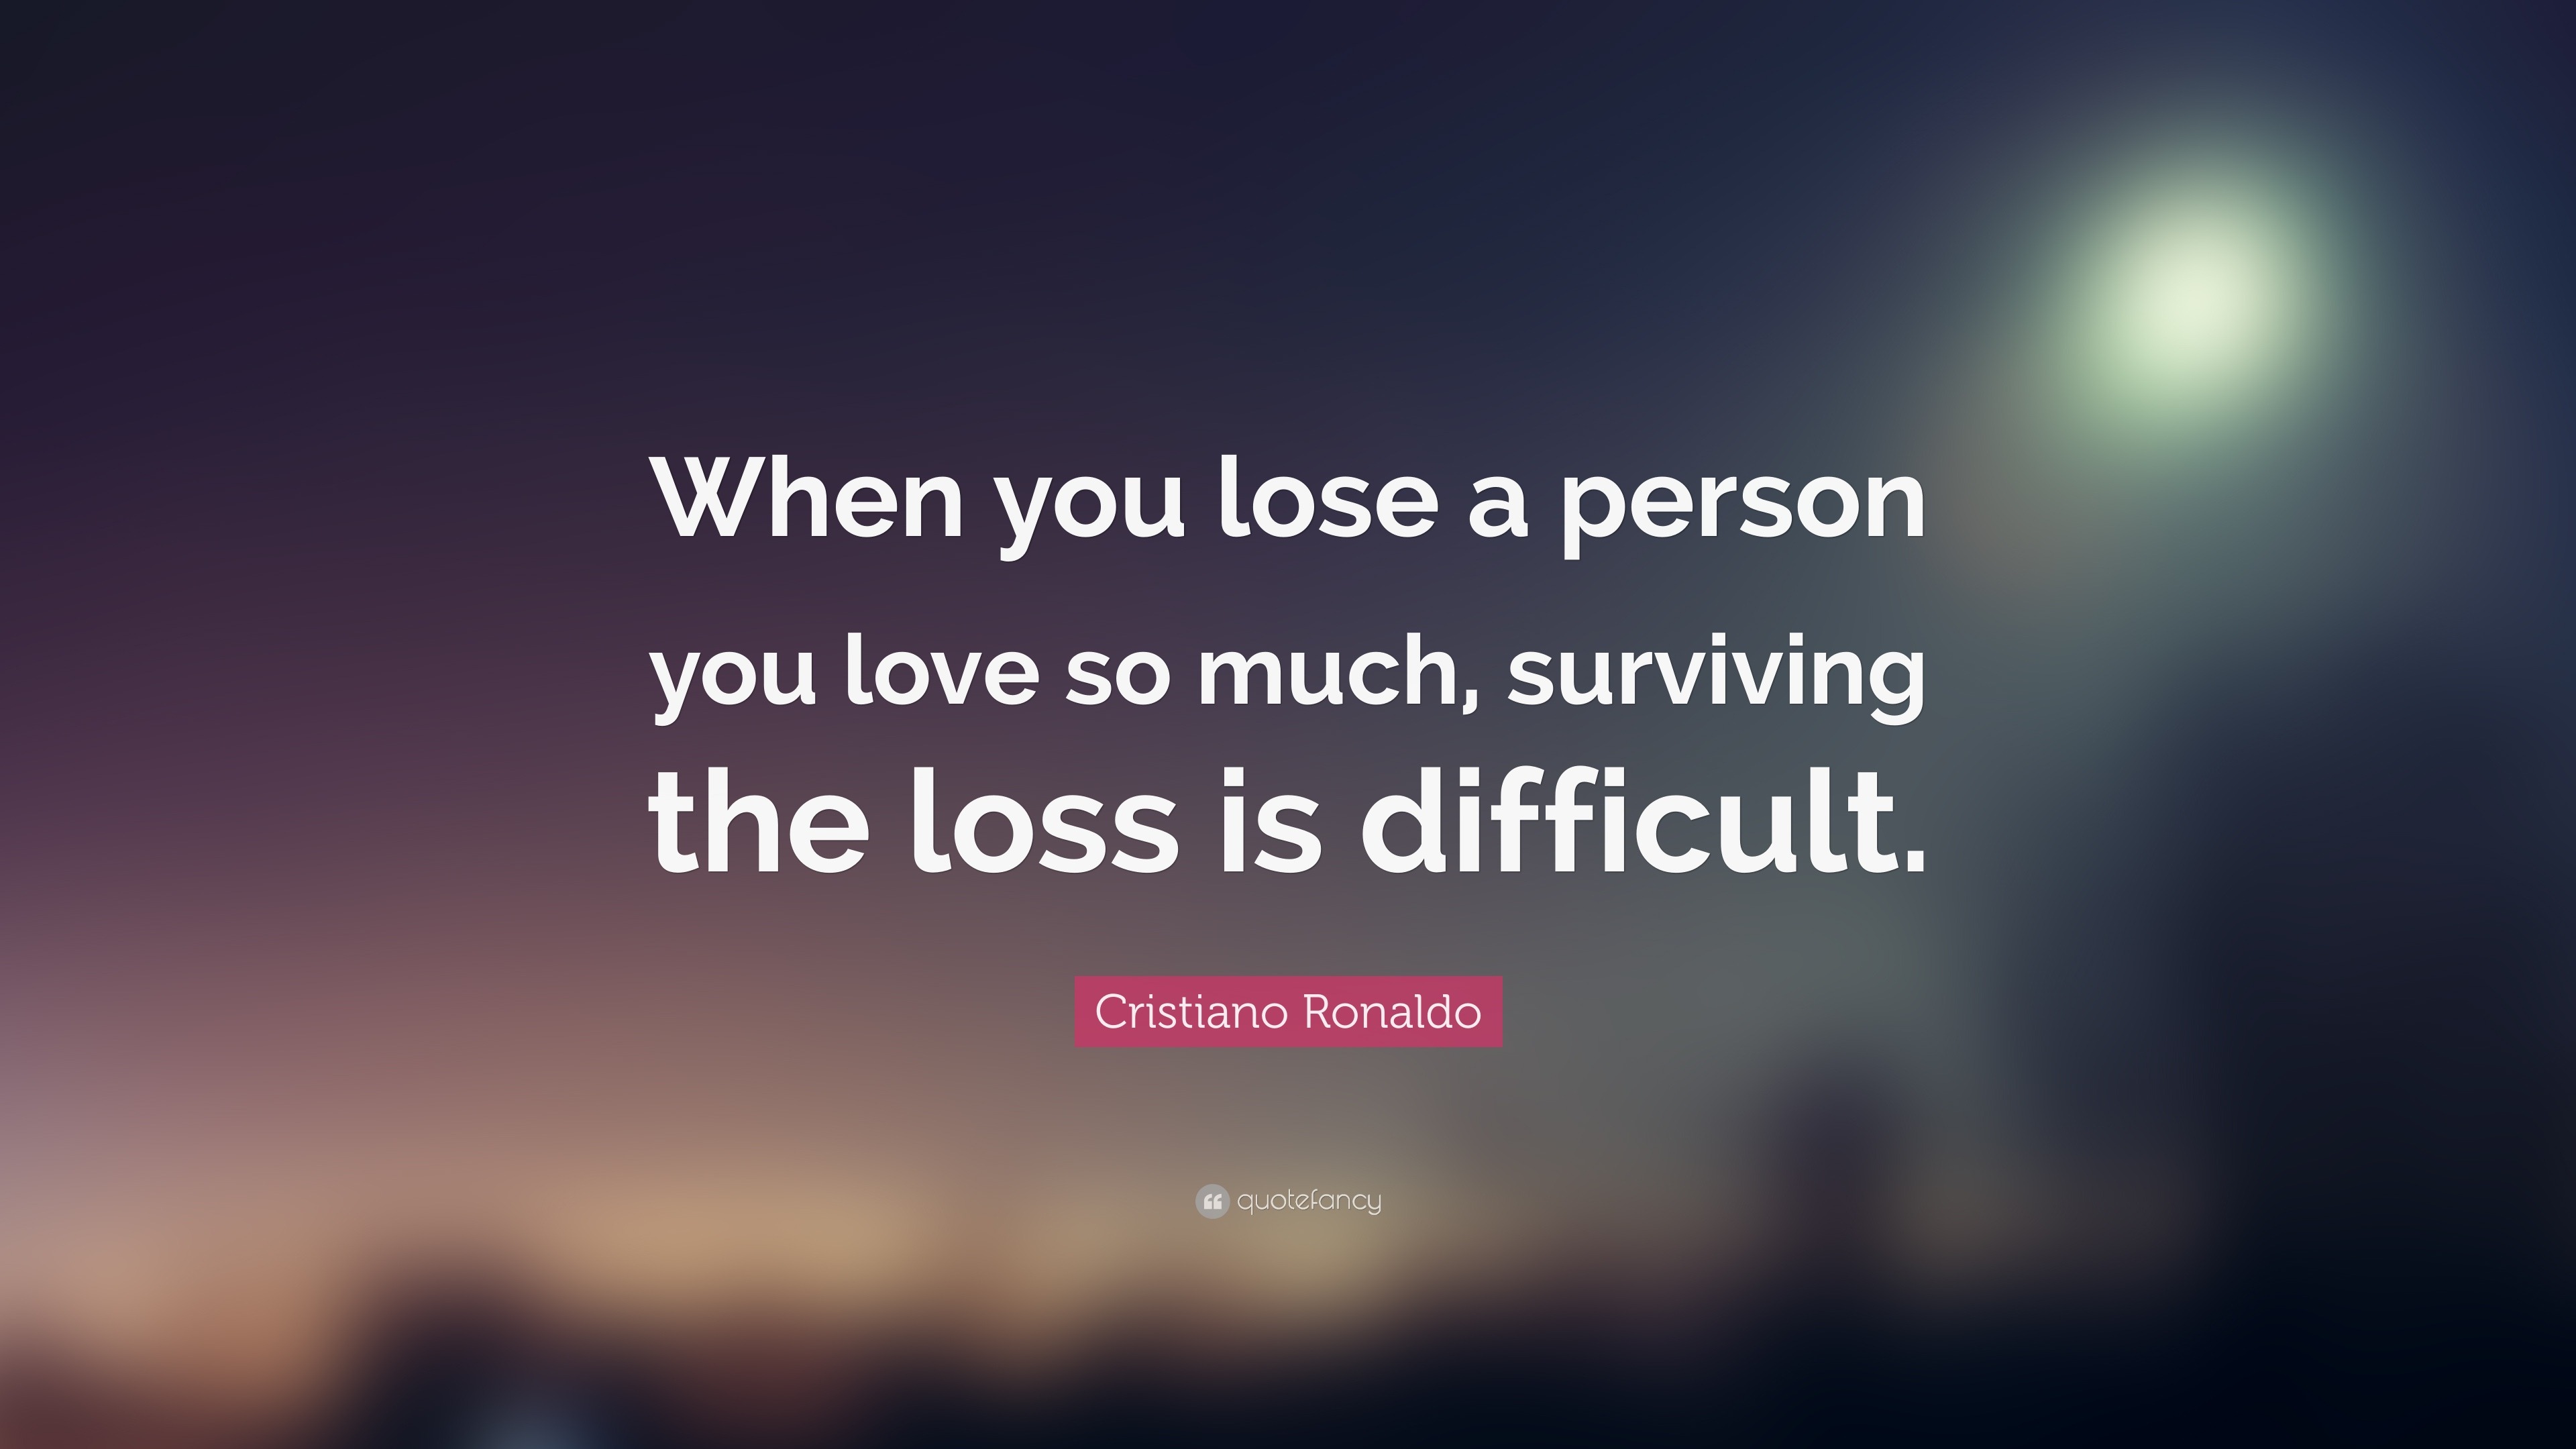 Cristiano Ronaldo Quote “When you lose a person you love so much surviving